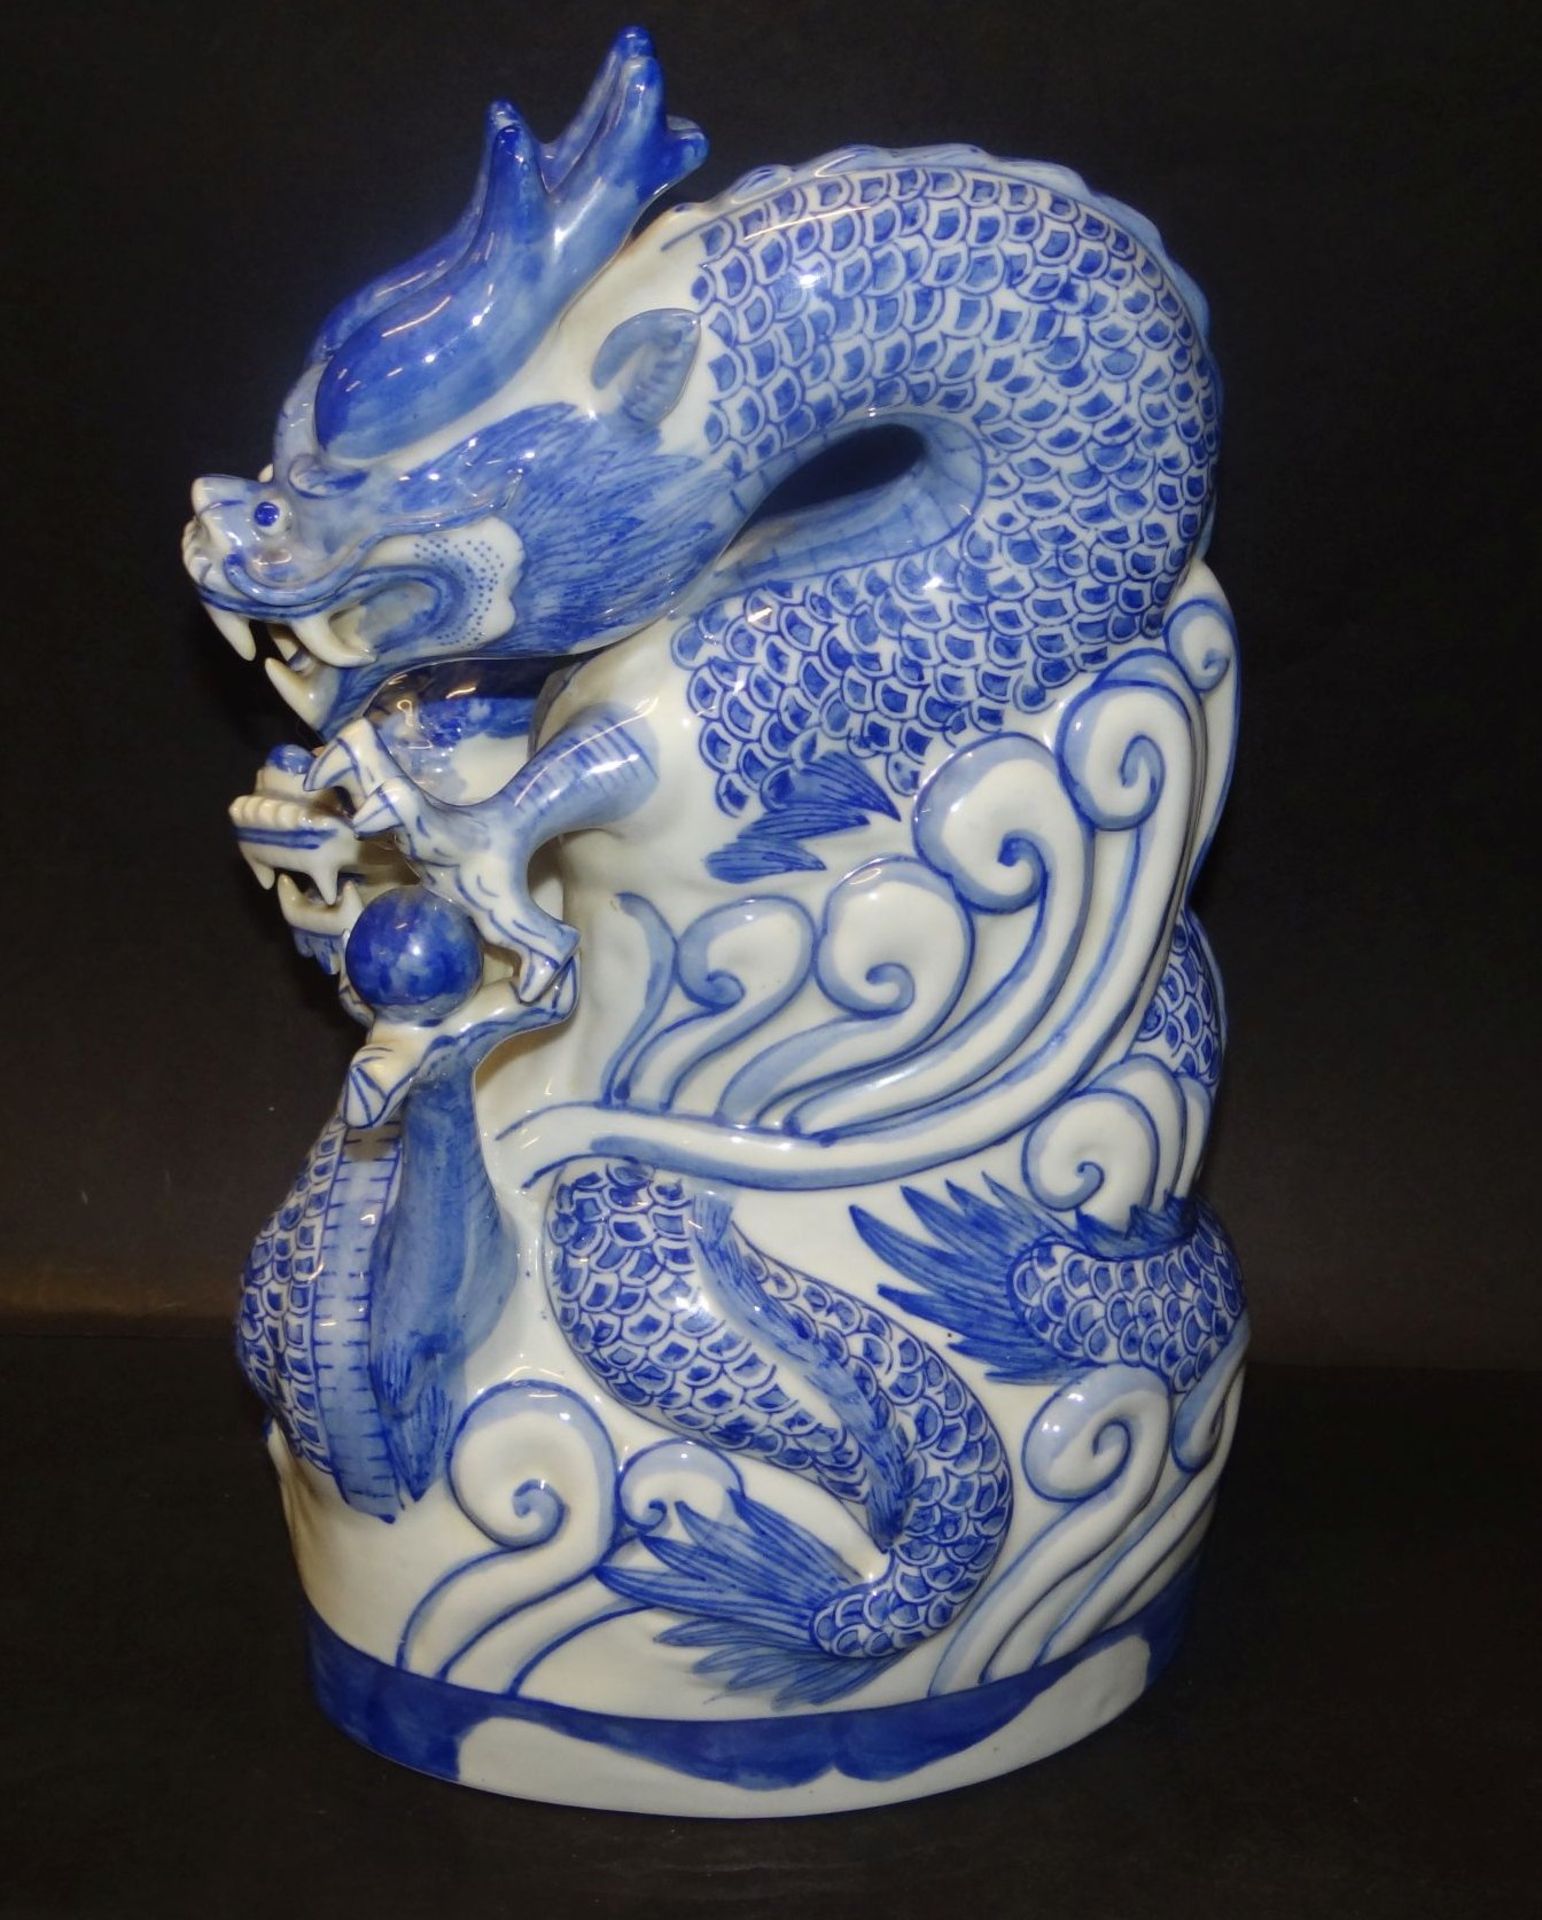 grosser China-Drache mit Kugel, Blaumalerei, H-35 cm, kl. Abplatzer seitlich - Bild 2 aus 7